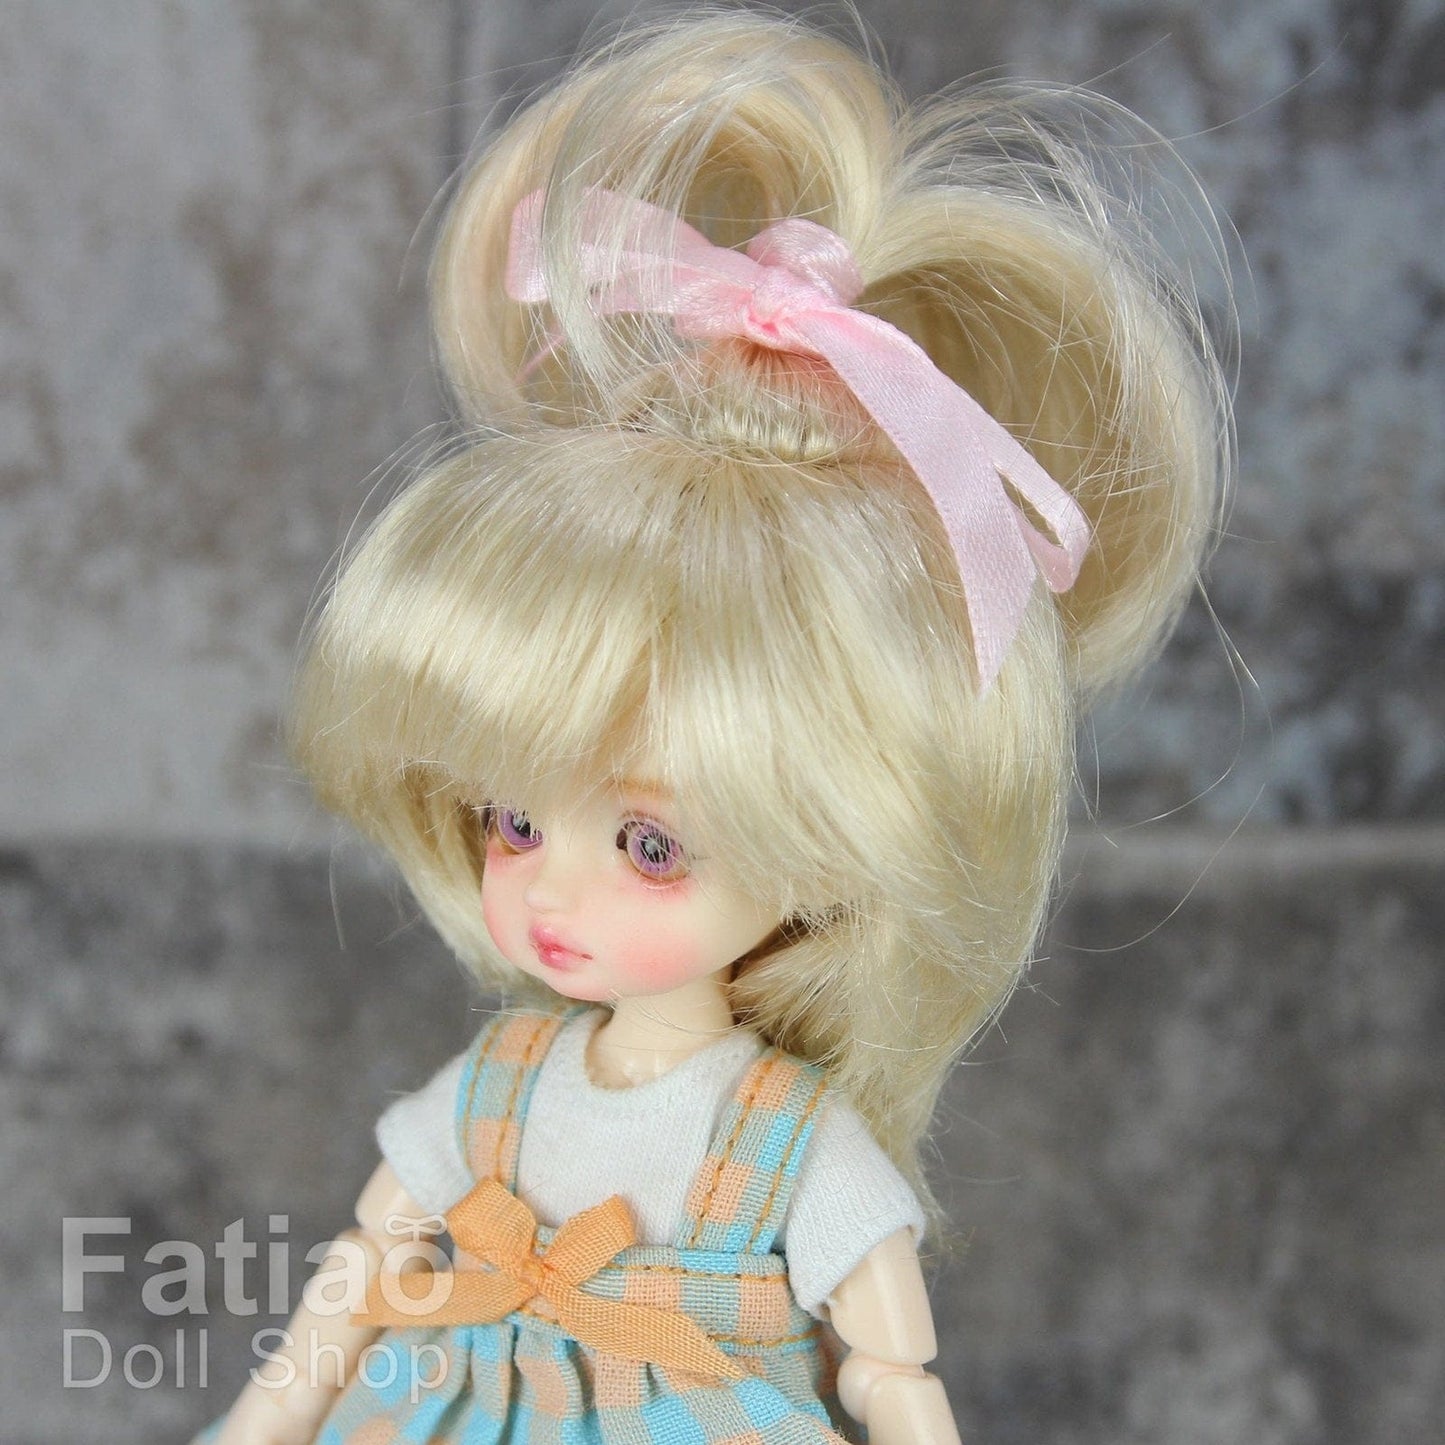 【Fatiao Doll Shop】FWF-002 娃用假髮 多色 / 3-4吋 BJD 12分 pukipuki ob11